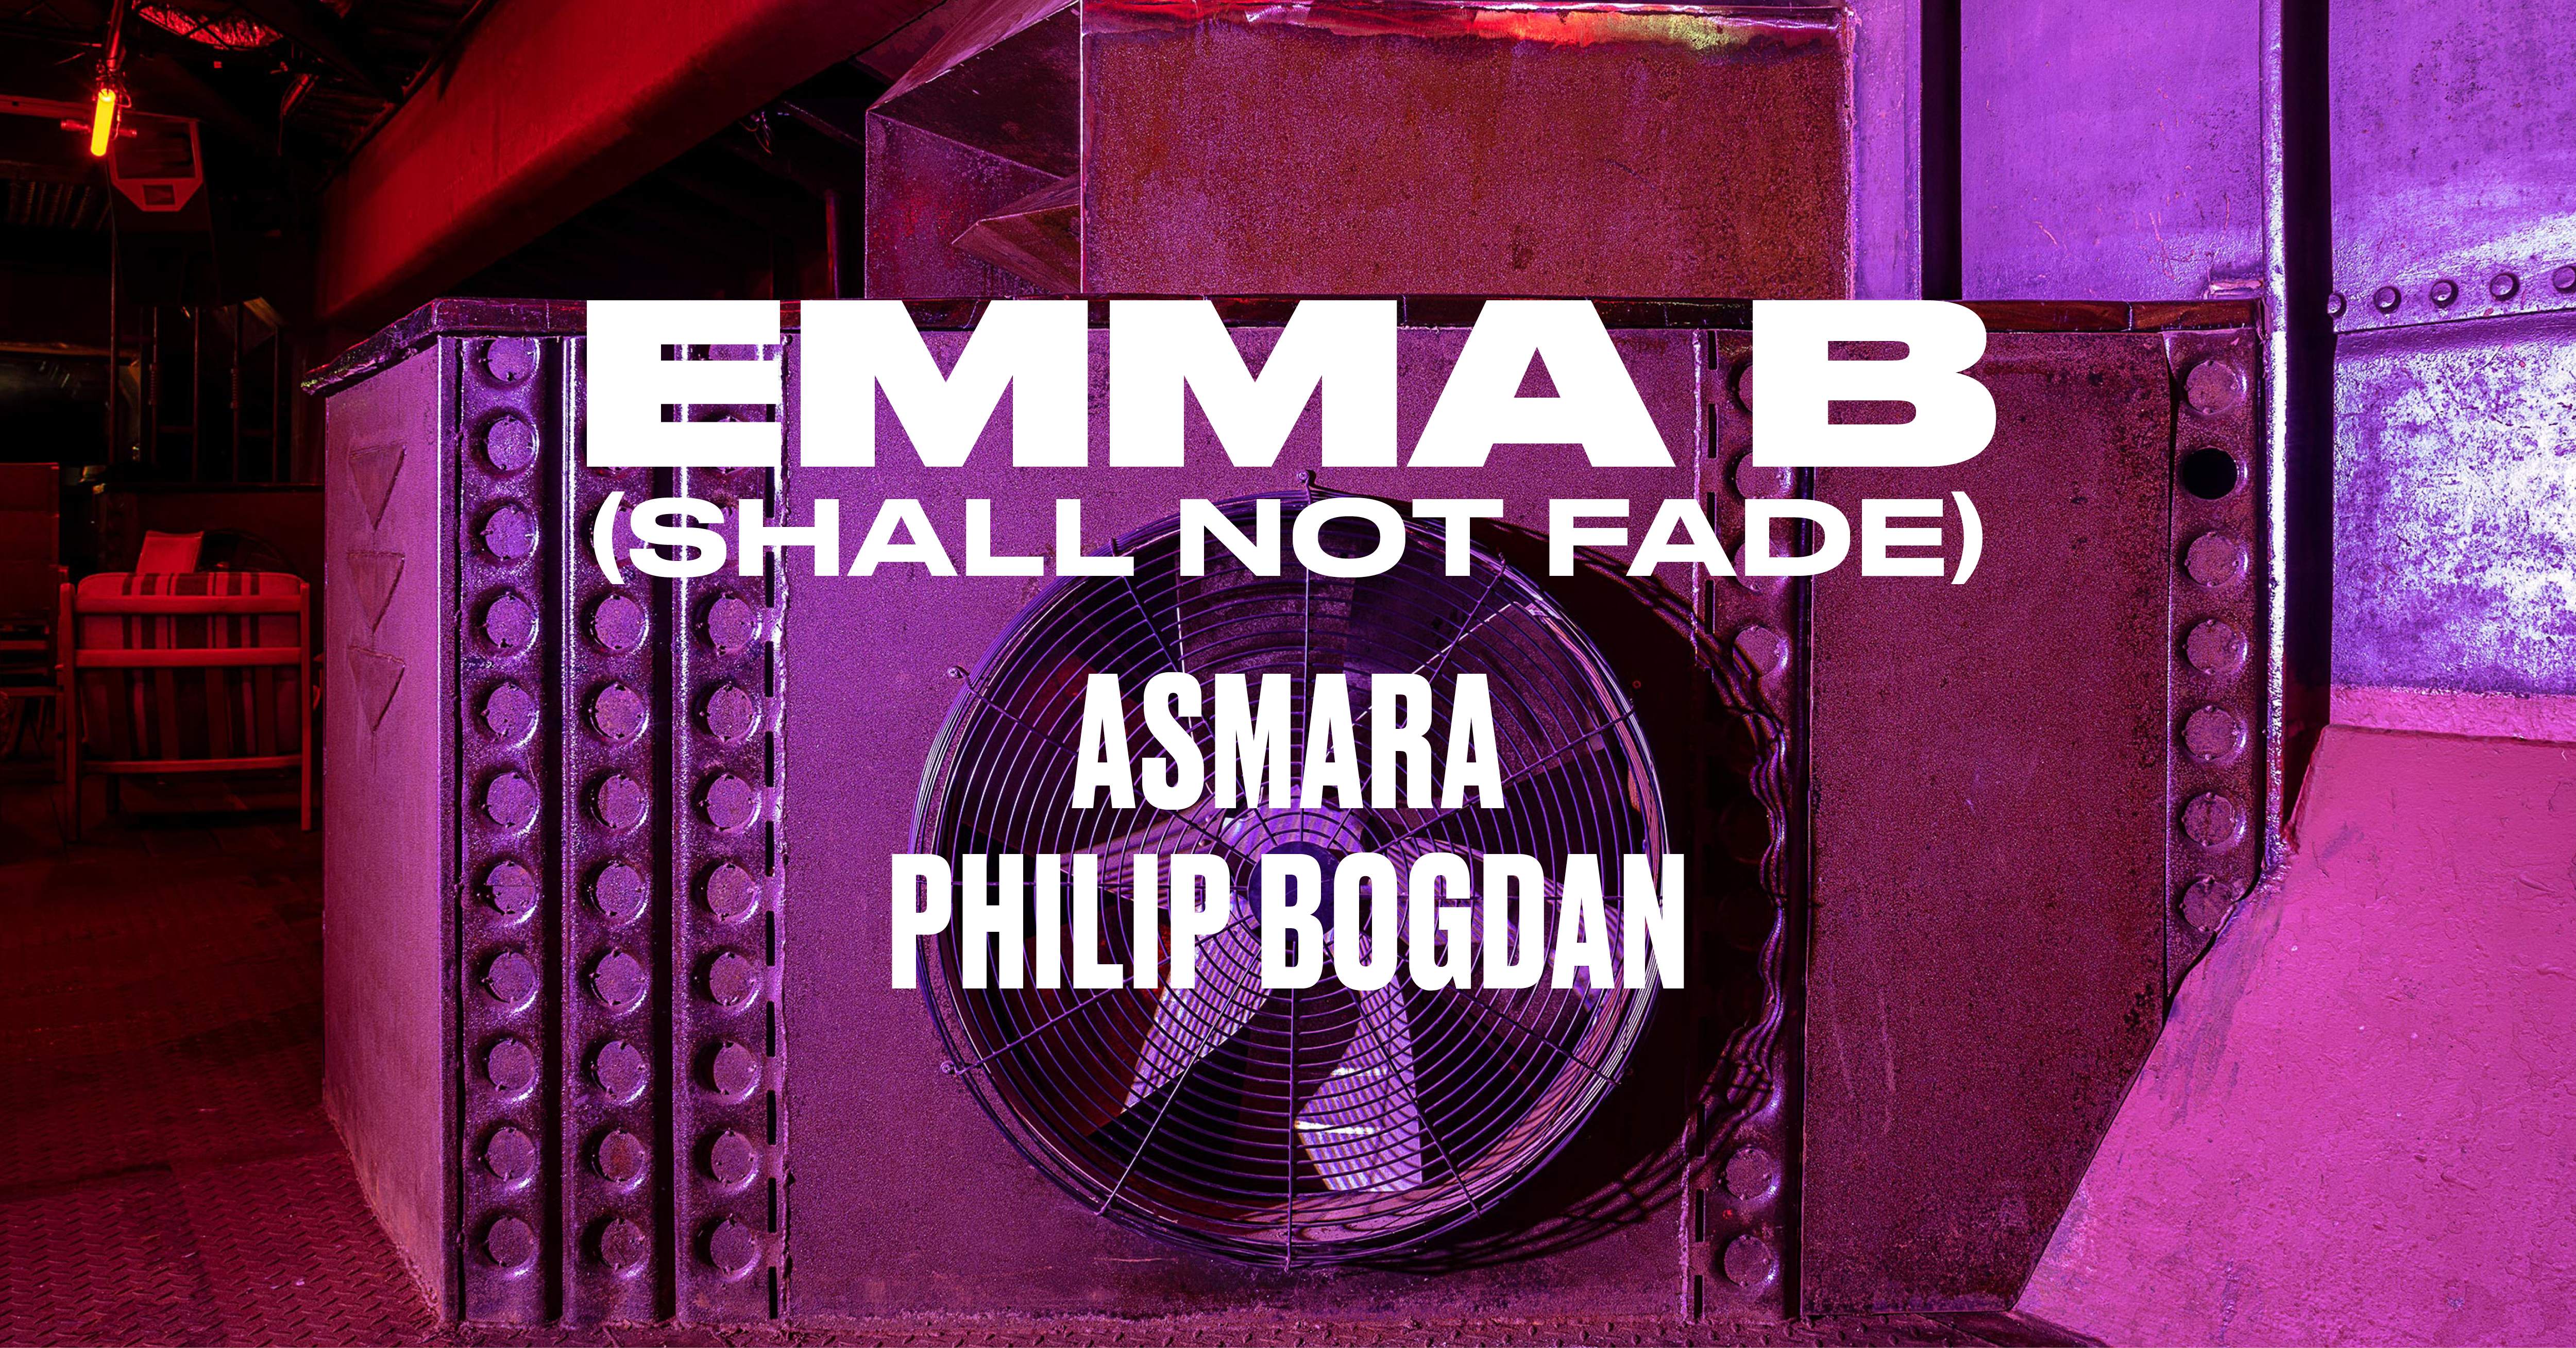 EMMA B (SHALL NOT FADE), ASMARA, PHILIP BOGDAN x Fridas Pier - フライヤー表